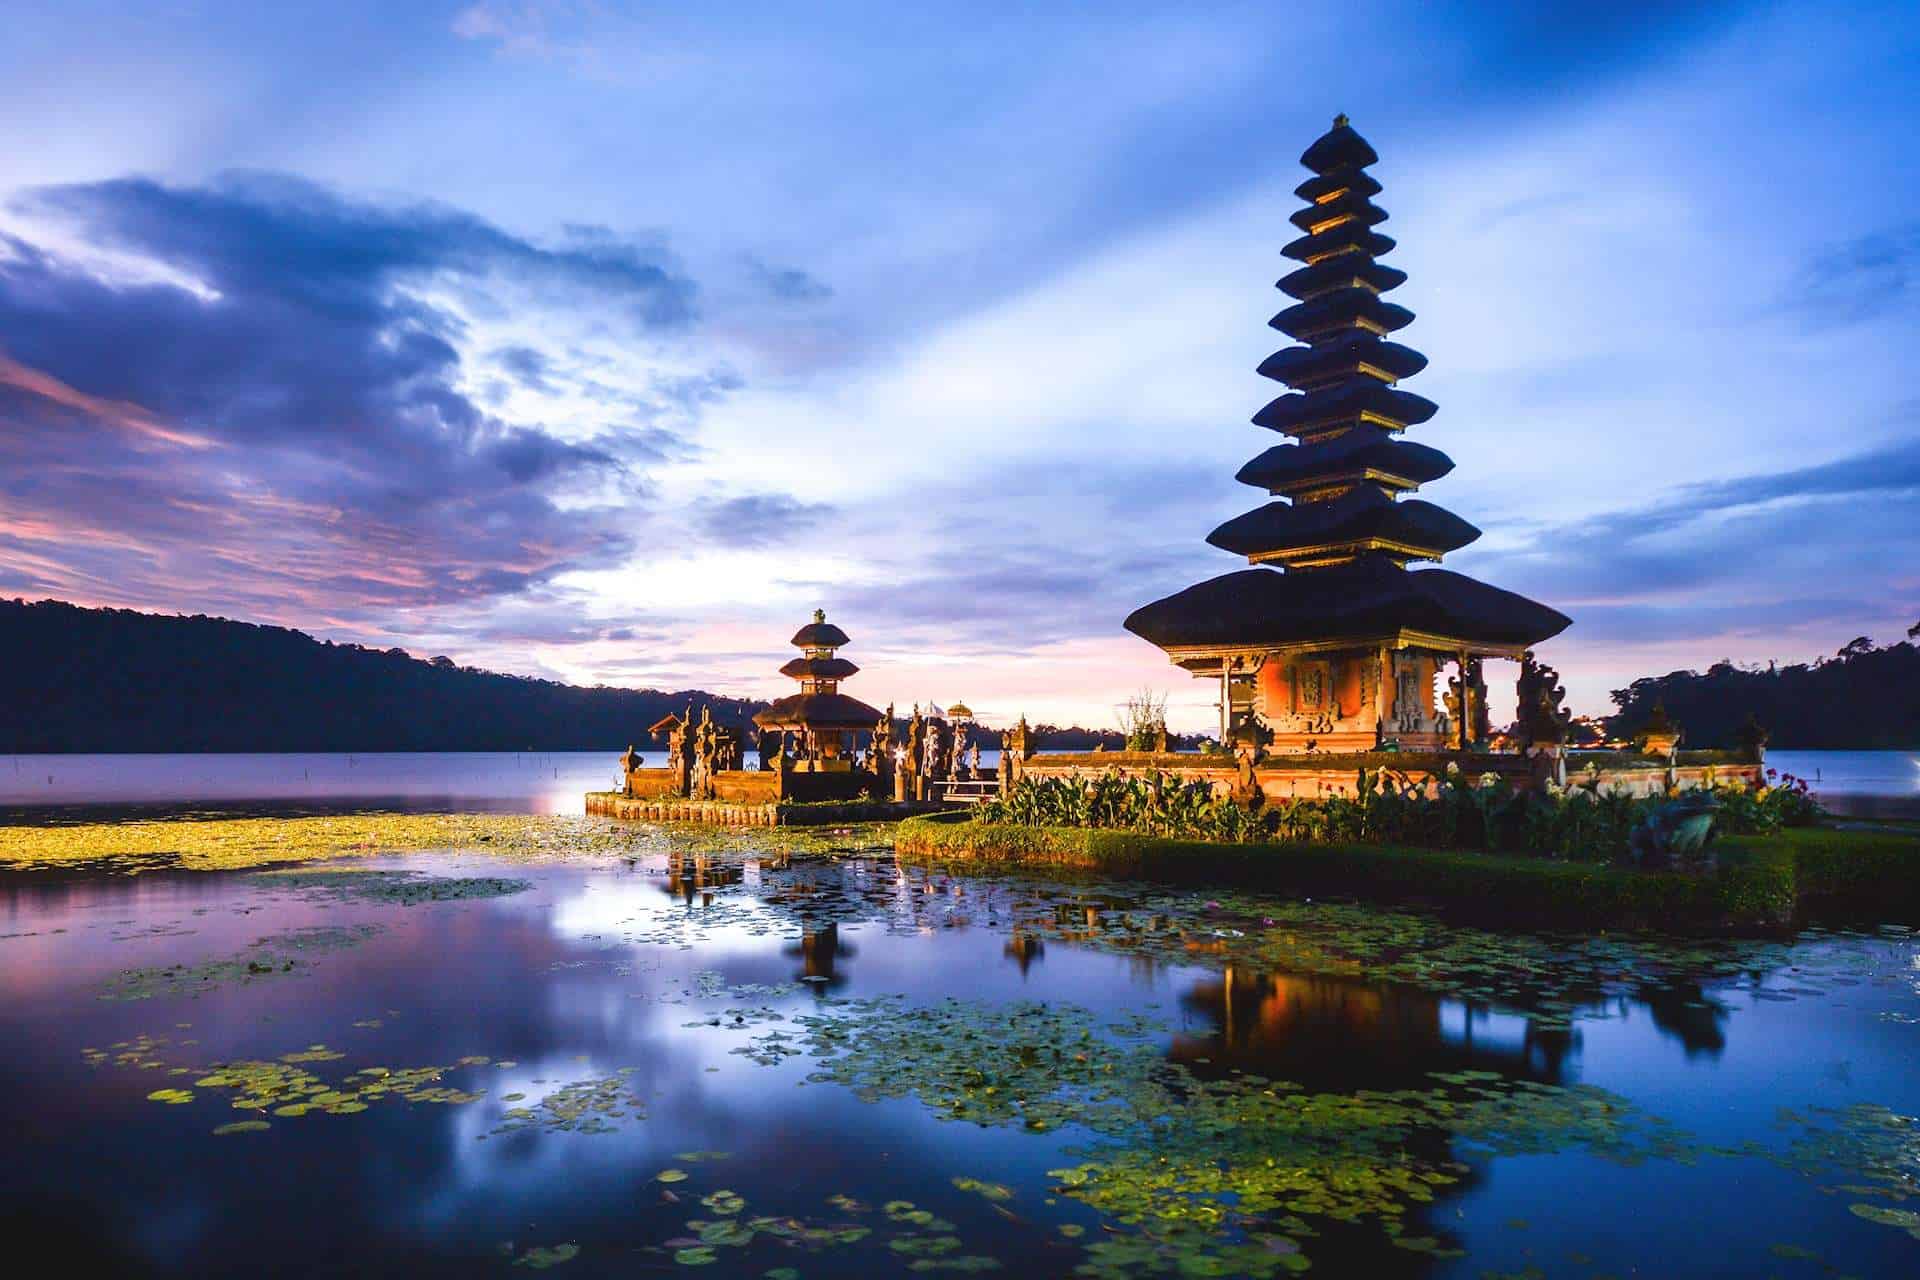 تقرير رحلتي الى اندونيسيا (جاكرتا – بالي – بونشاك)